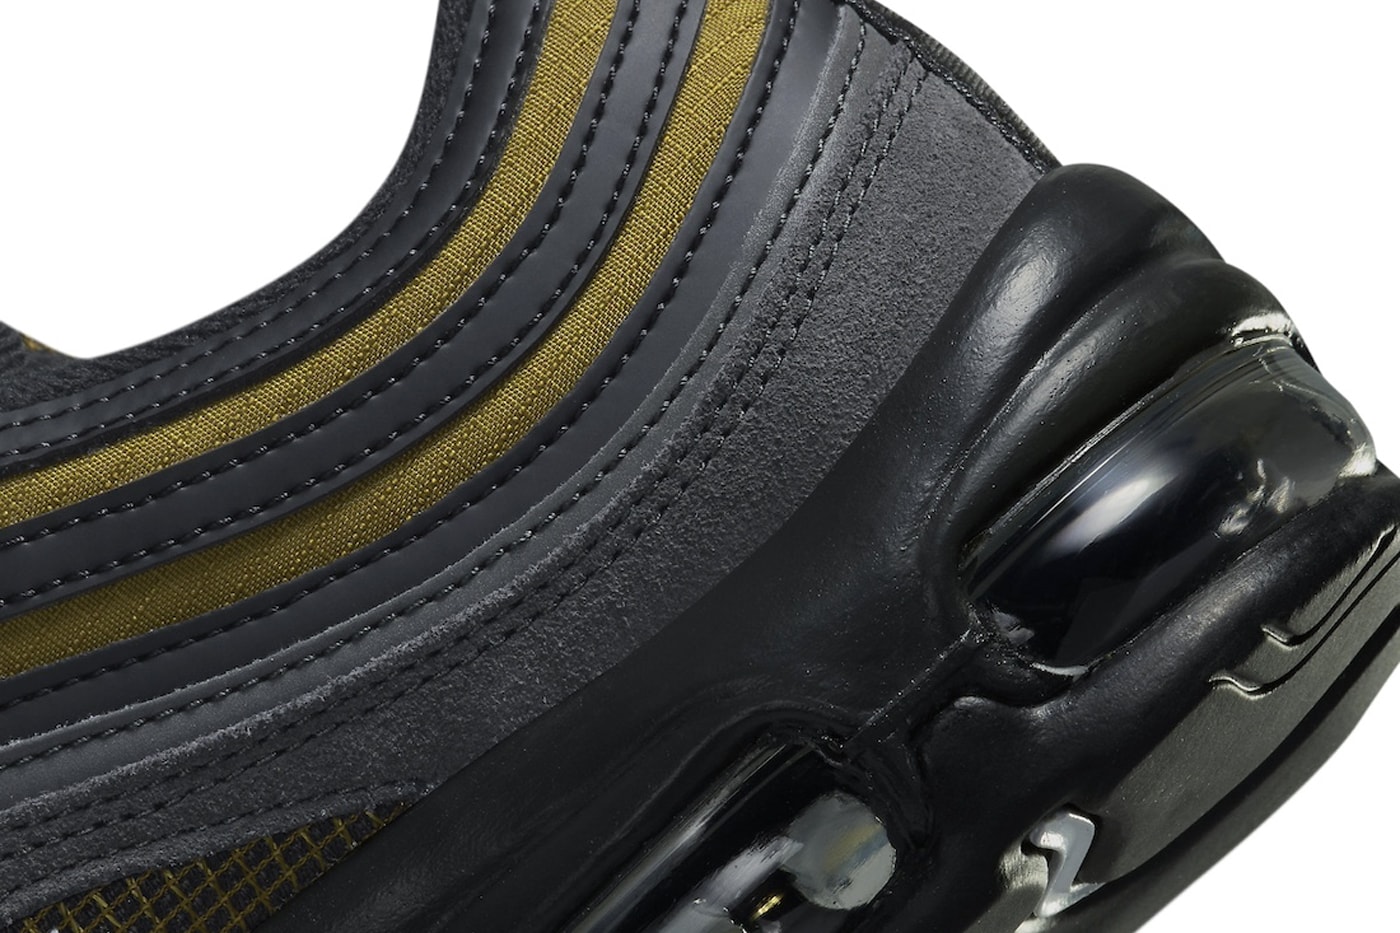 ナイキ エアマックス97からリュクスなカラーリングの新作 ゴールデンベージュが登場 Nike Air Max 97 "Golden Beige" FB9619-200 Release Info Golden Beige/Anthracite-White december 2023 suede mesh leather sports shoes sneakers classic 